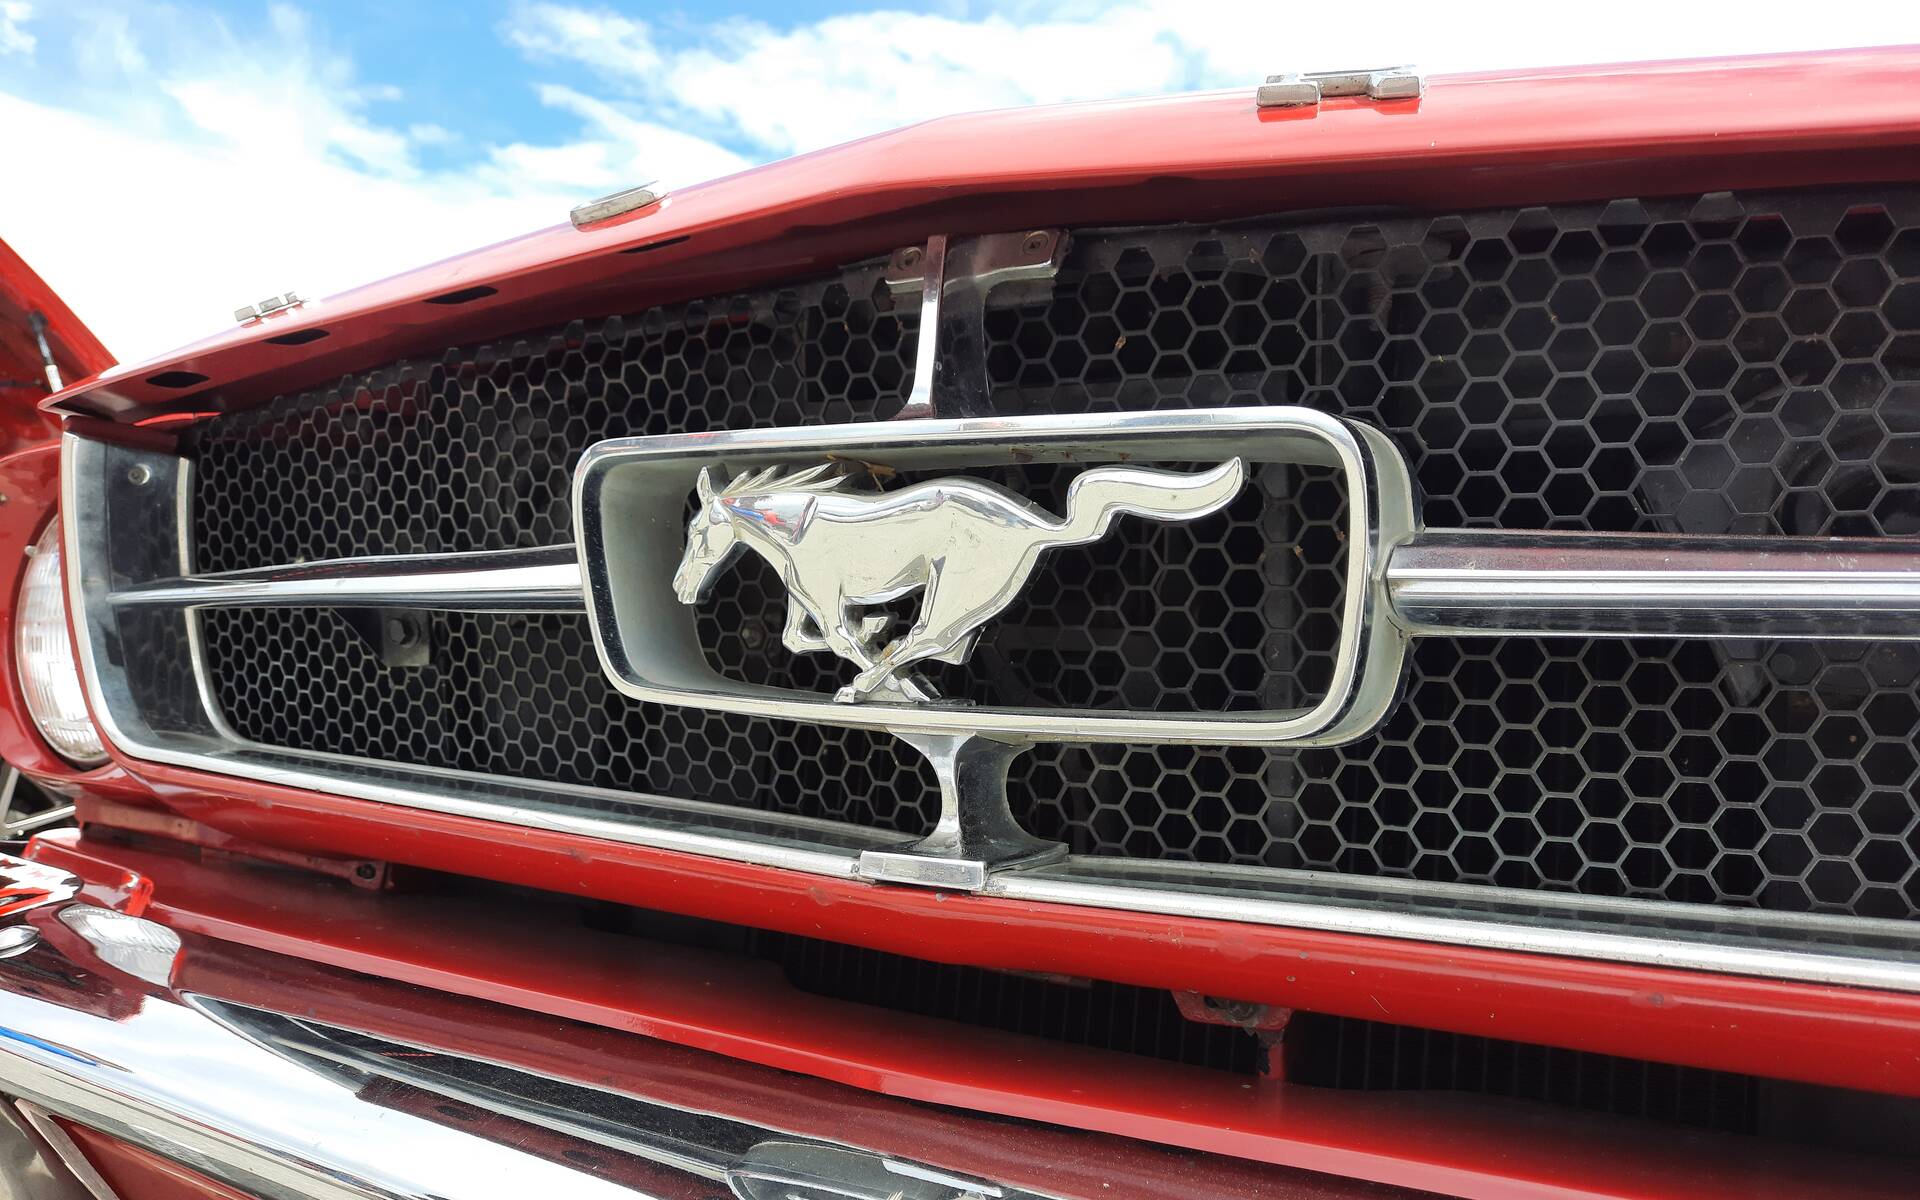 Les Québécois s’unissent pour le plus long convoi de Ford Mustang au monde